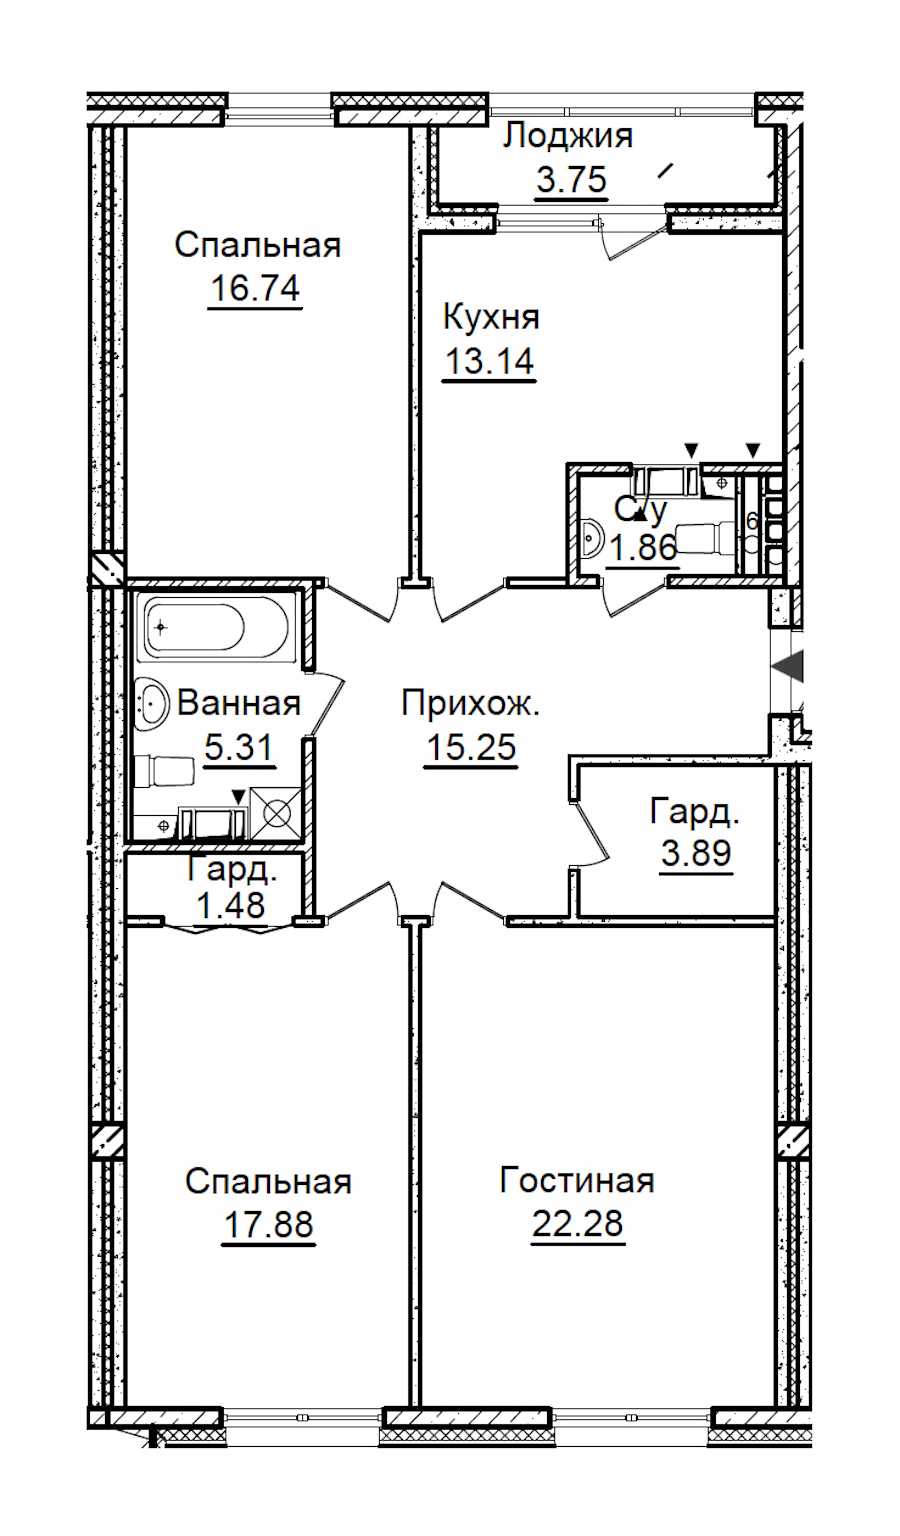 Трехкомнатная квартира в ПСК: площадь 99.71 м2 , этаж: 6 – купить в Санкт-Петербурге